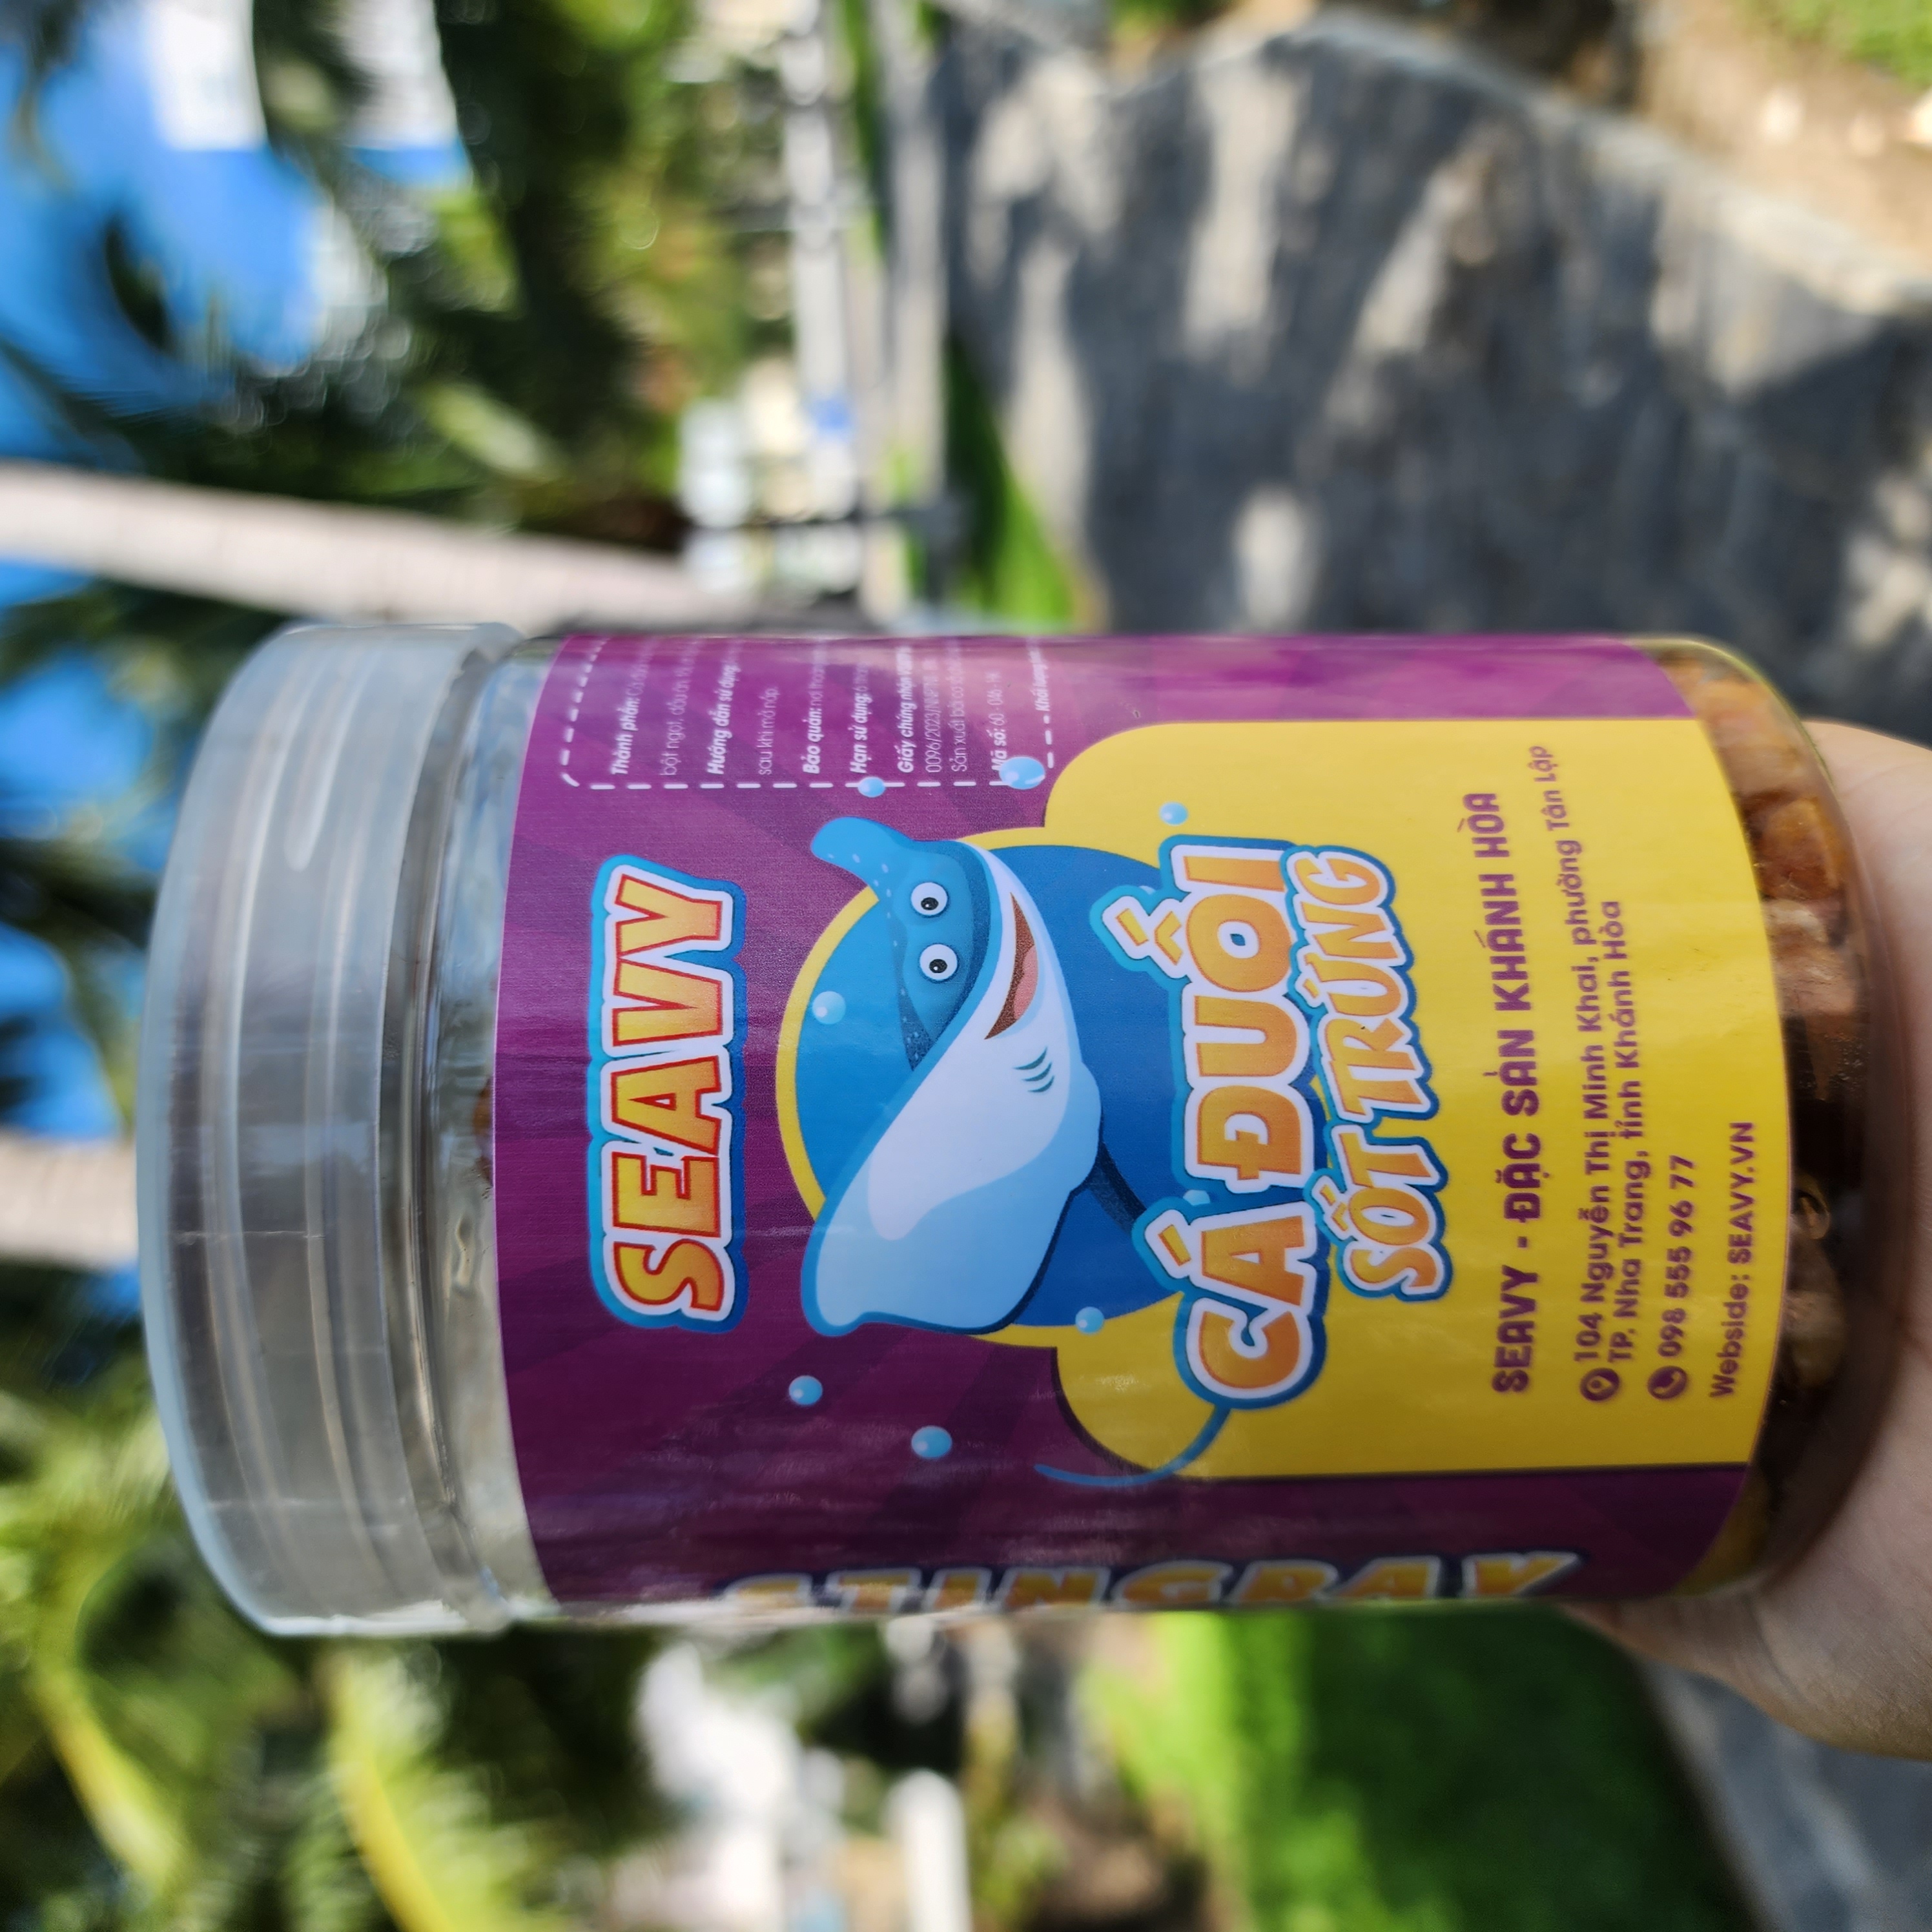 Đặc Sản Nha Trang-Cá Đuối Sốt Trứng,Seavy Hộp 220 gram